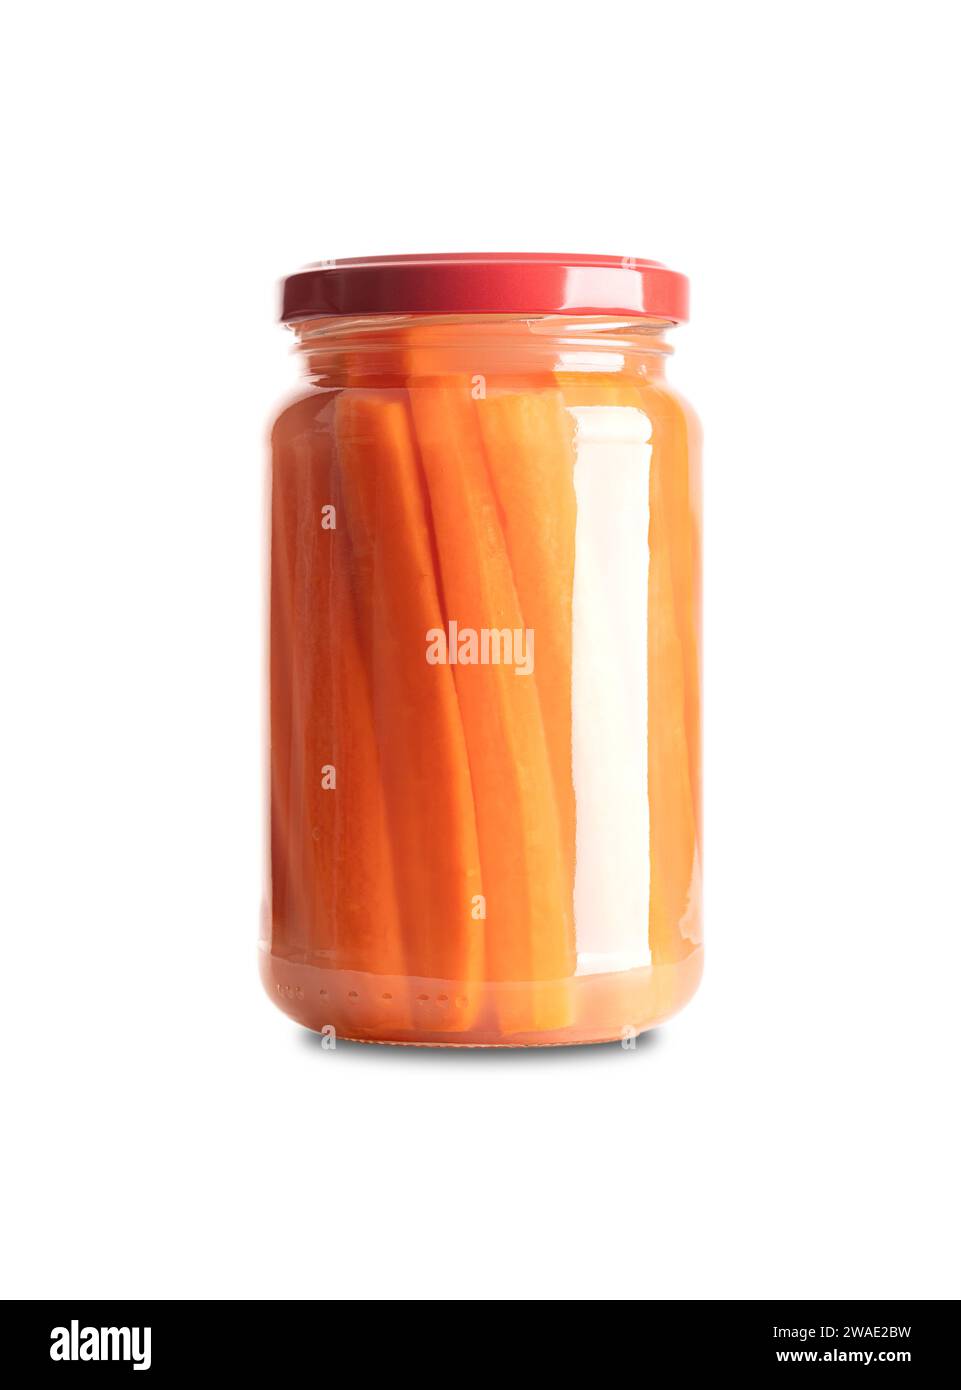 Bastoncini di carote, carote fermentate fatte in casa, in vaso di vetro con coperchio. Carote tagliate in bastoncini, fermentate da batteri lattici. Foto Stock